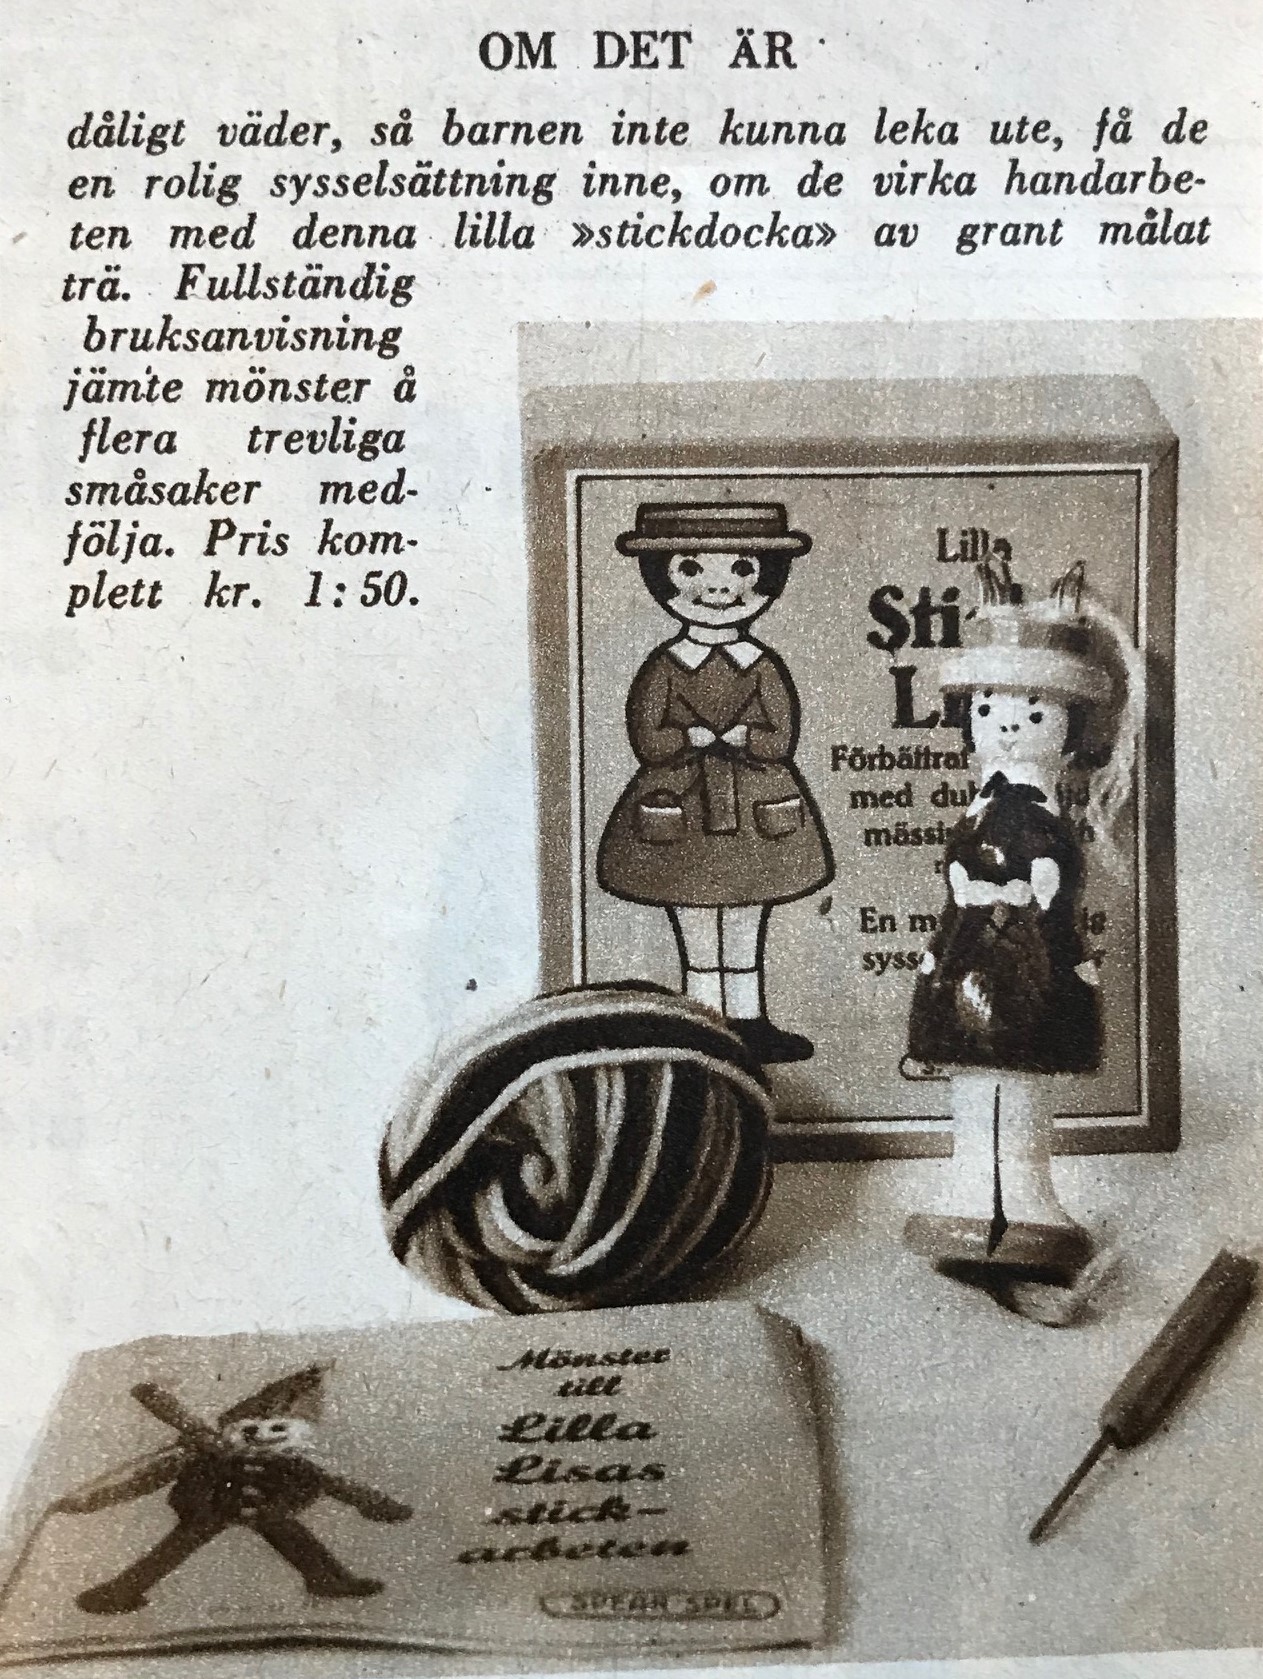 Foto på en bild i Veckojournalen 1931 på en stickdocka med medföljande ask, virknål och bruksanvisning med mönster. 